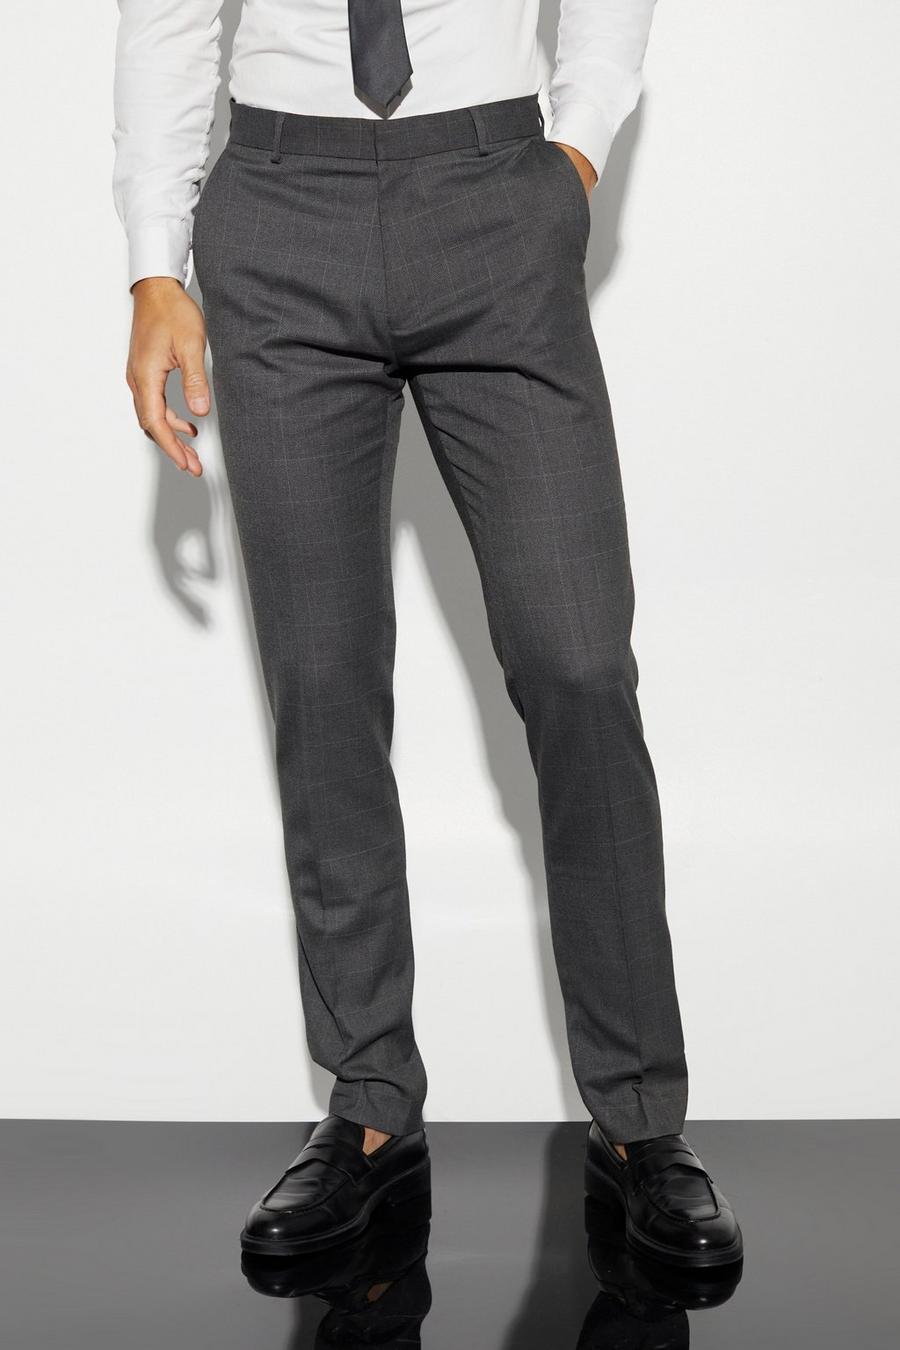 Pantalón Tall ajustado de cuadros entallado, Dark grey grigio